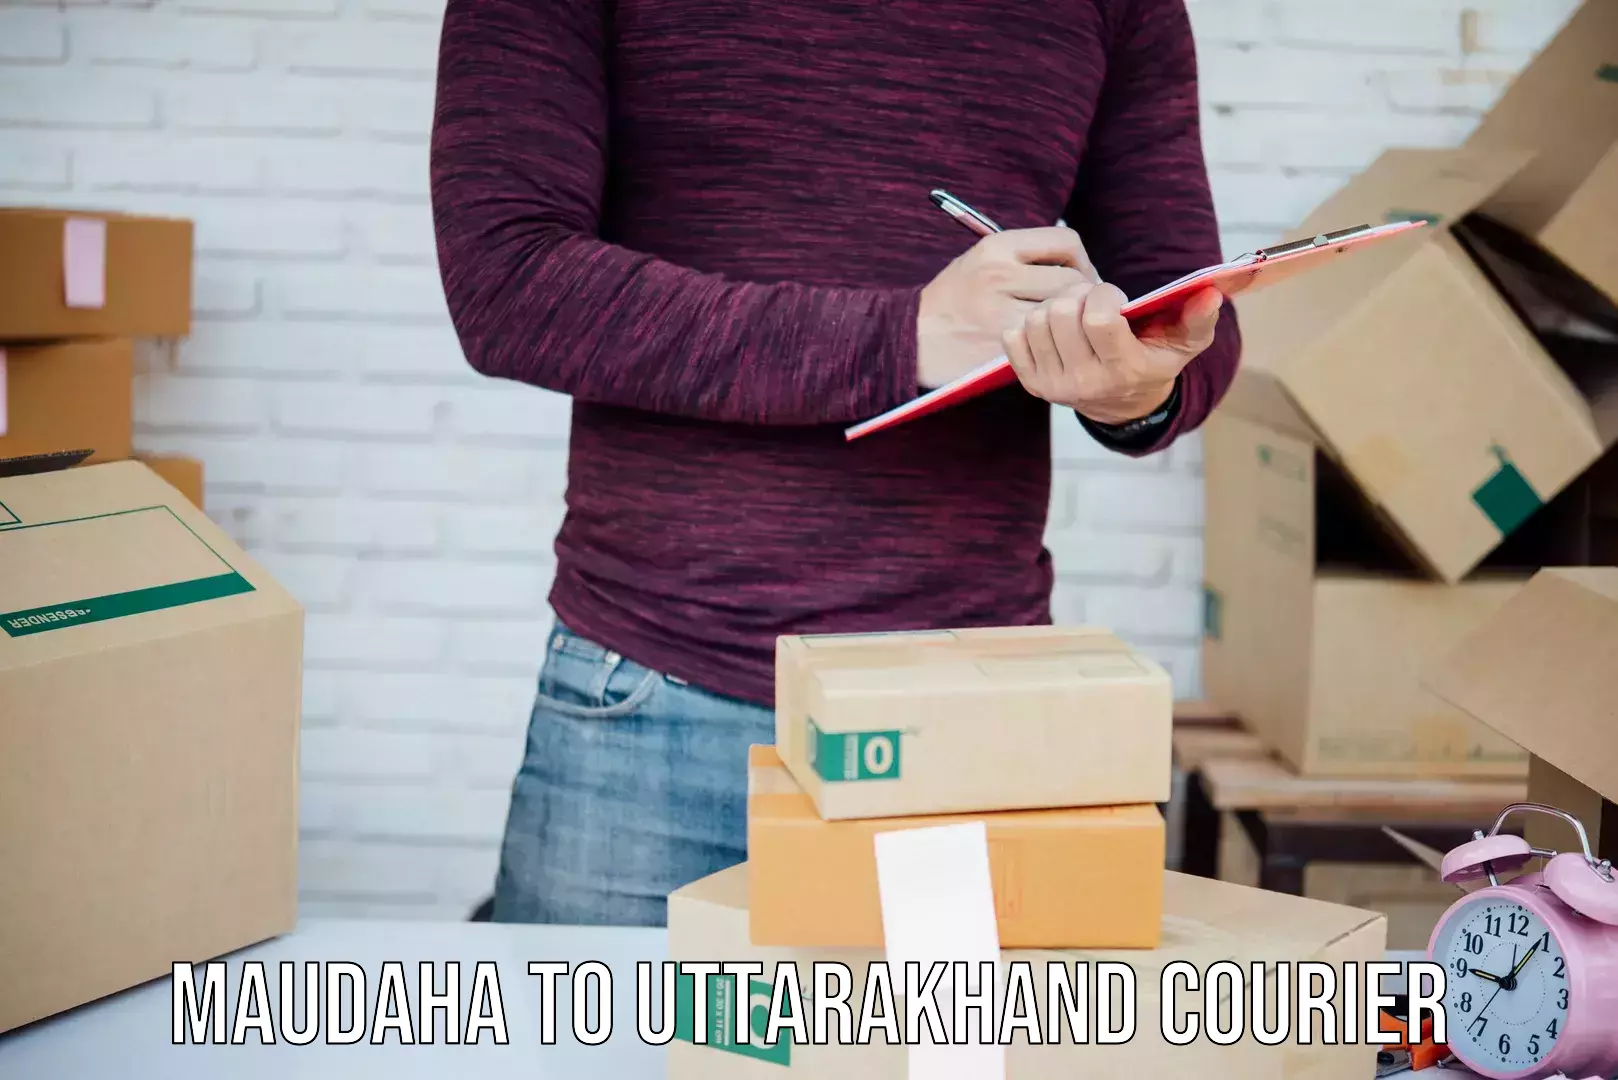 Custom courier packages in Maudaha to Uttarakhand